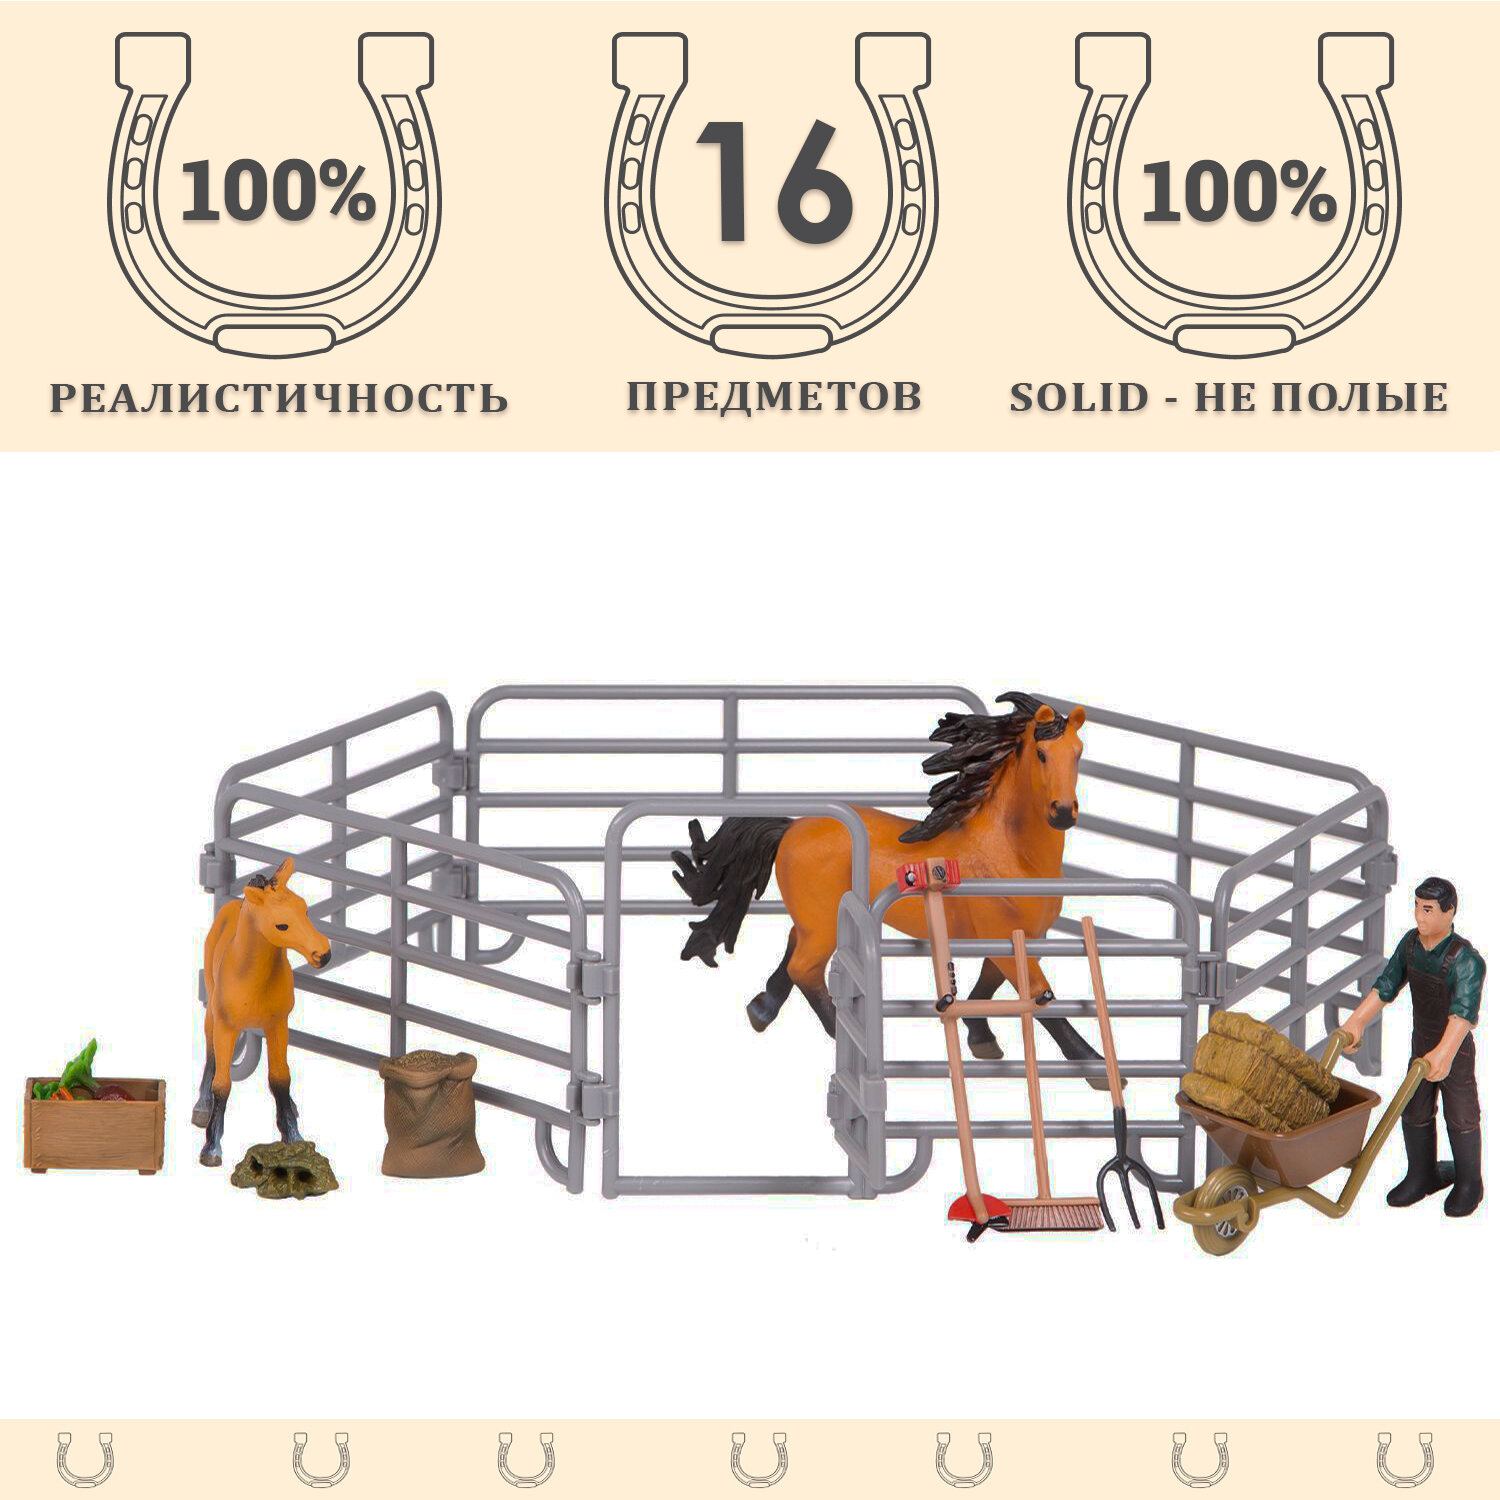 Набор фигурок животных серии "Мир лошадей": Конюшня игрушка, лошади, фермер, инвентарь - 16 предметов